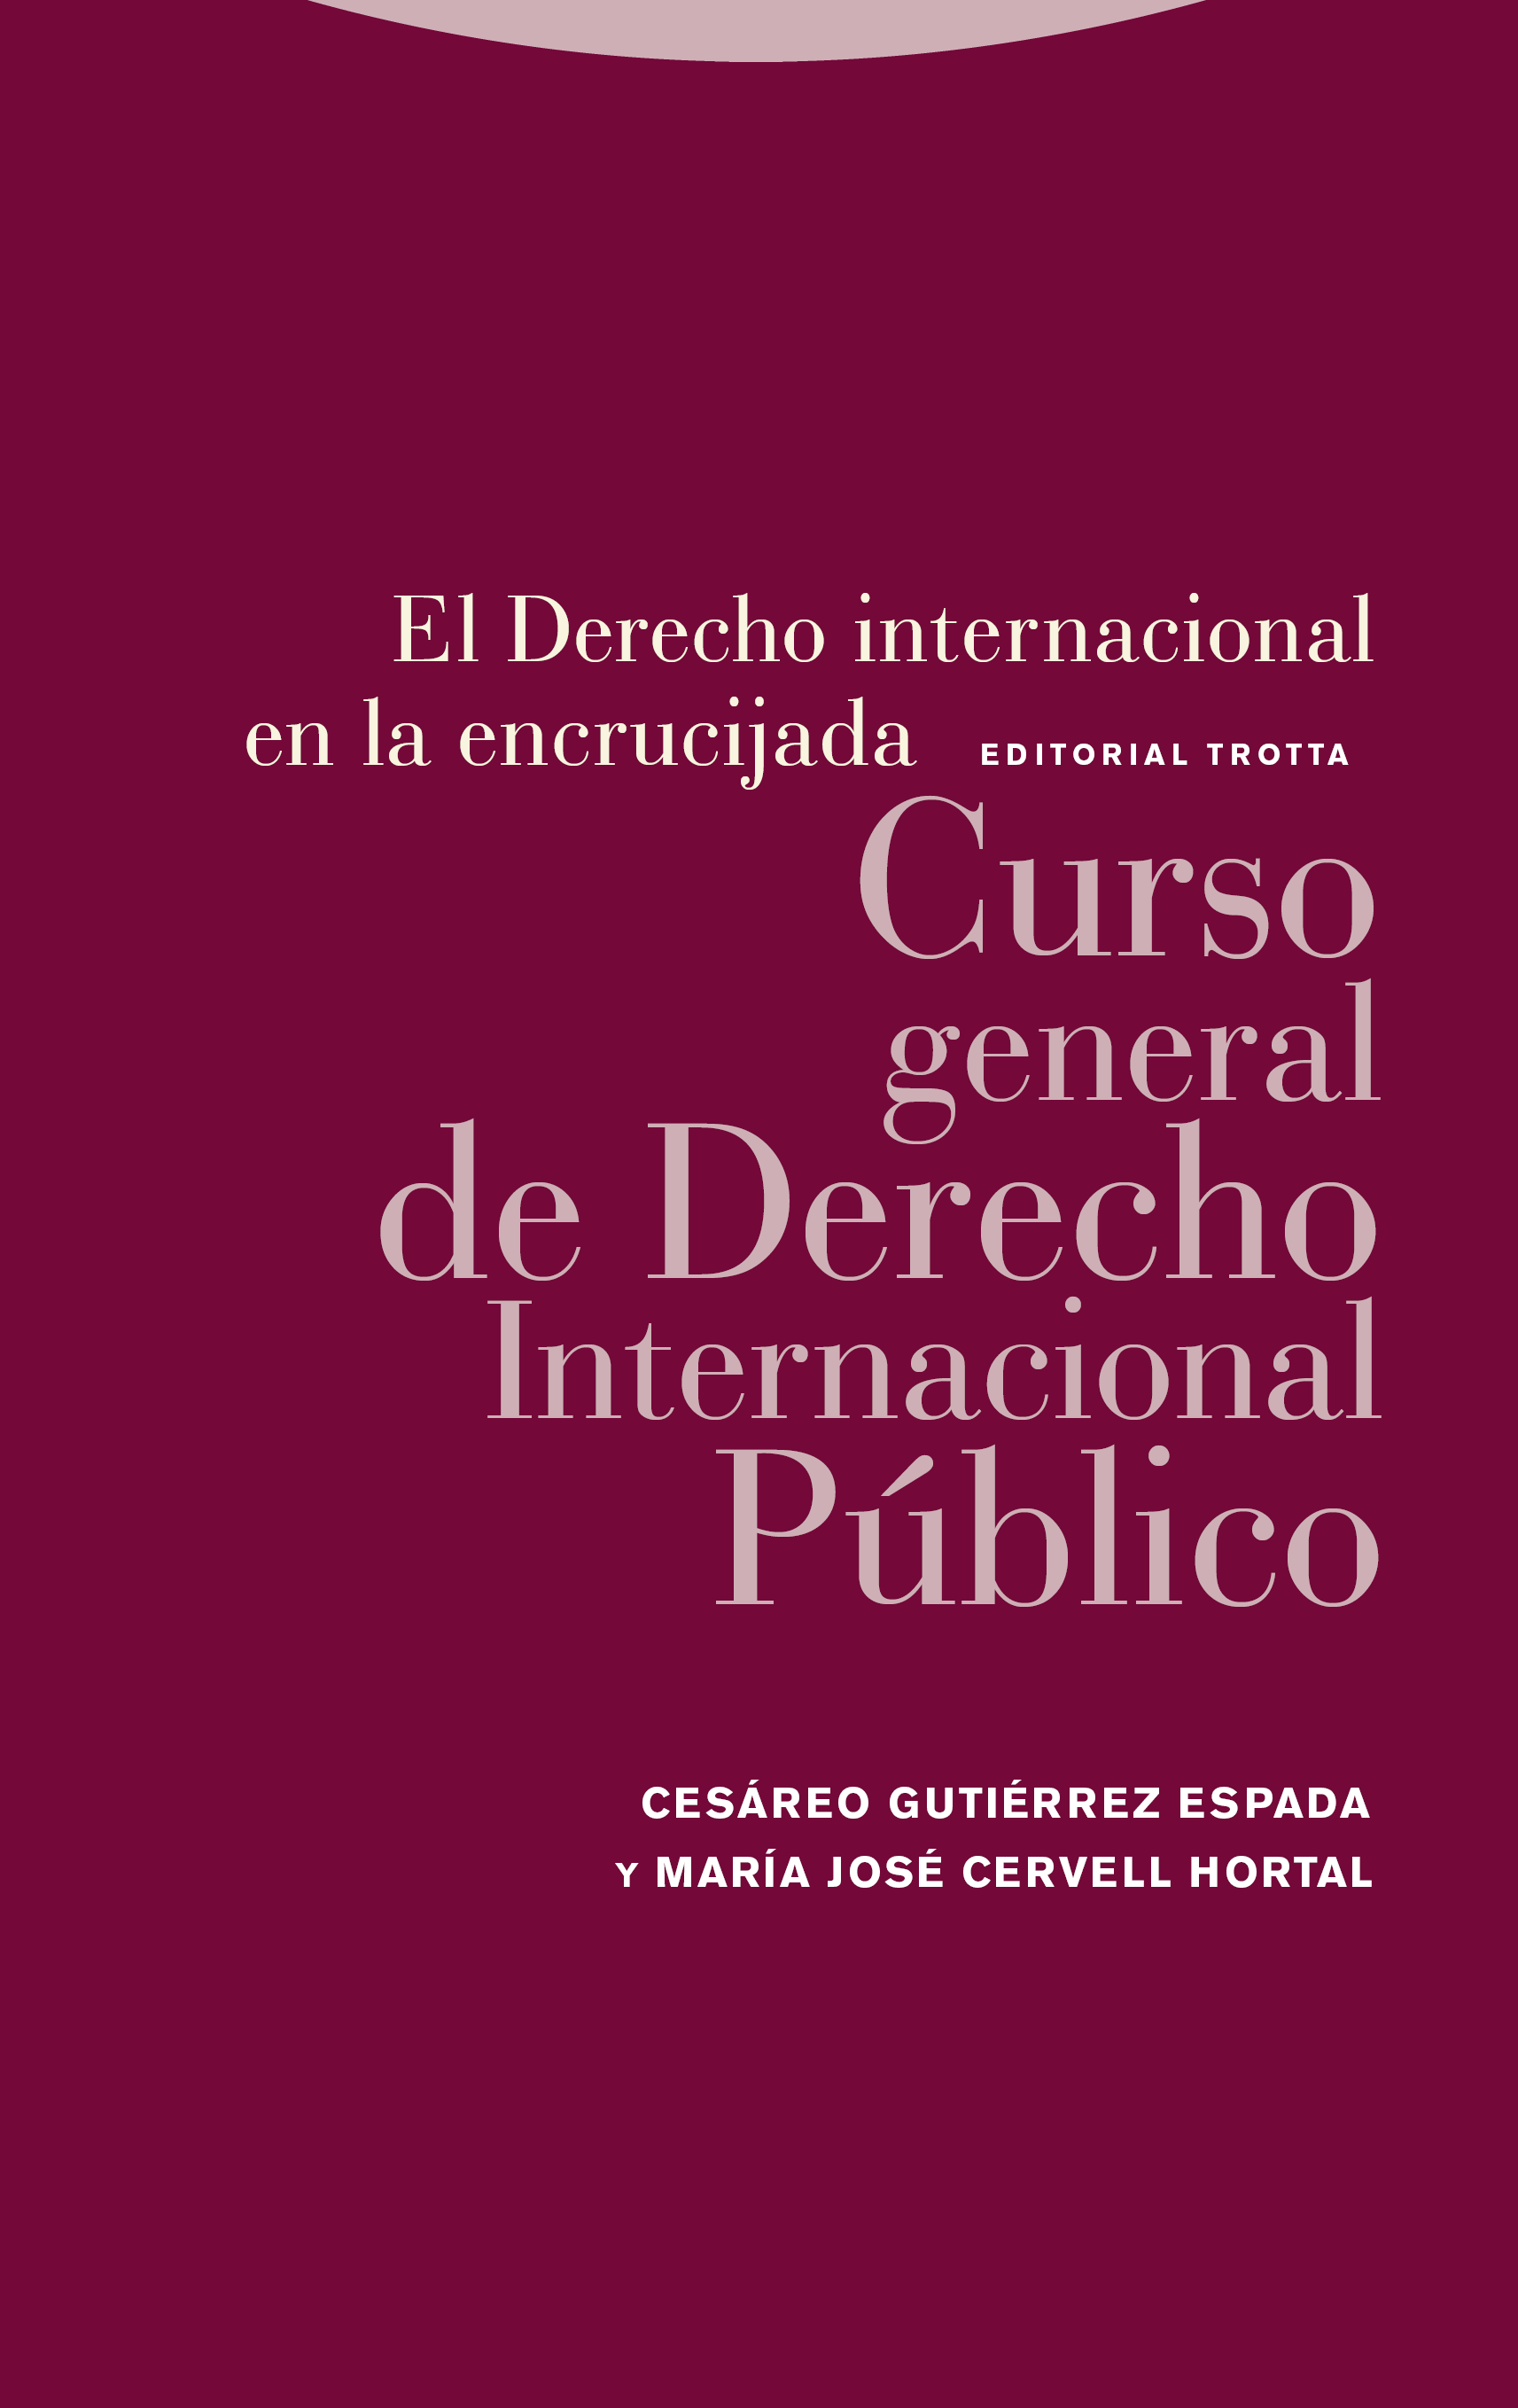 Himno taquigrafía lámpara Editorial Trotta El Derecho internacional en la encrucijada | Cesáreo  Gutiérrez Espada y María José Cervell Hortal | 978-84-9879-719-0